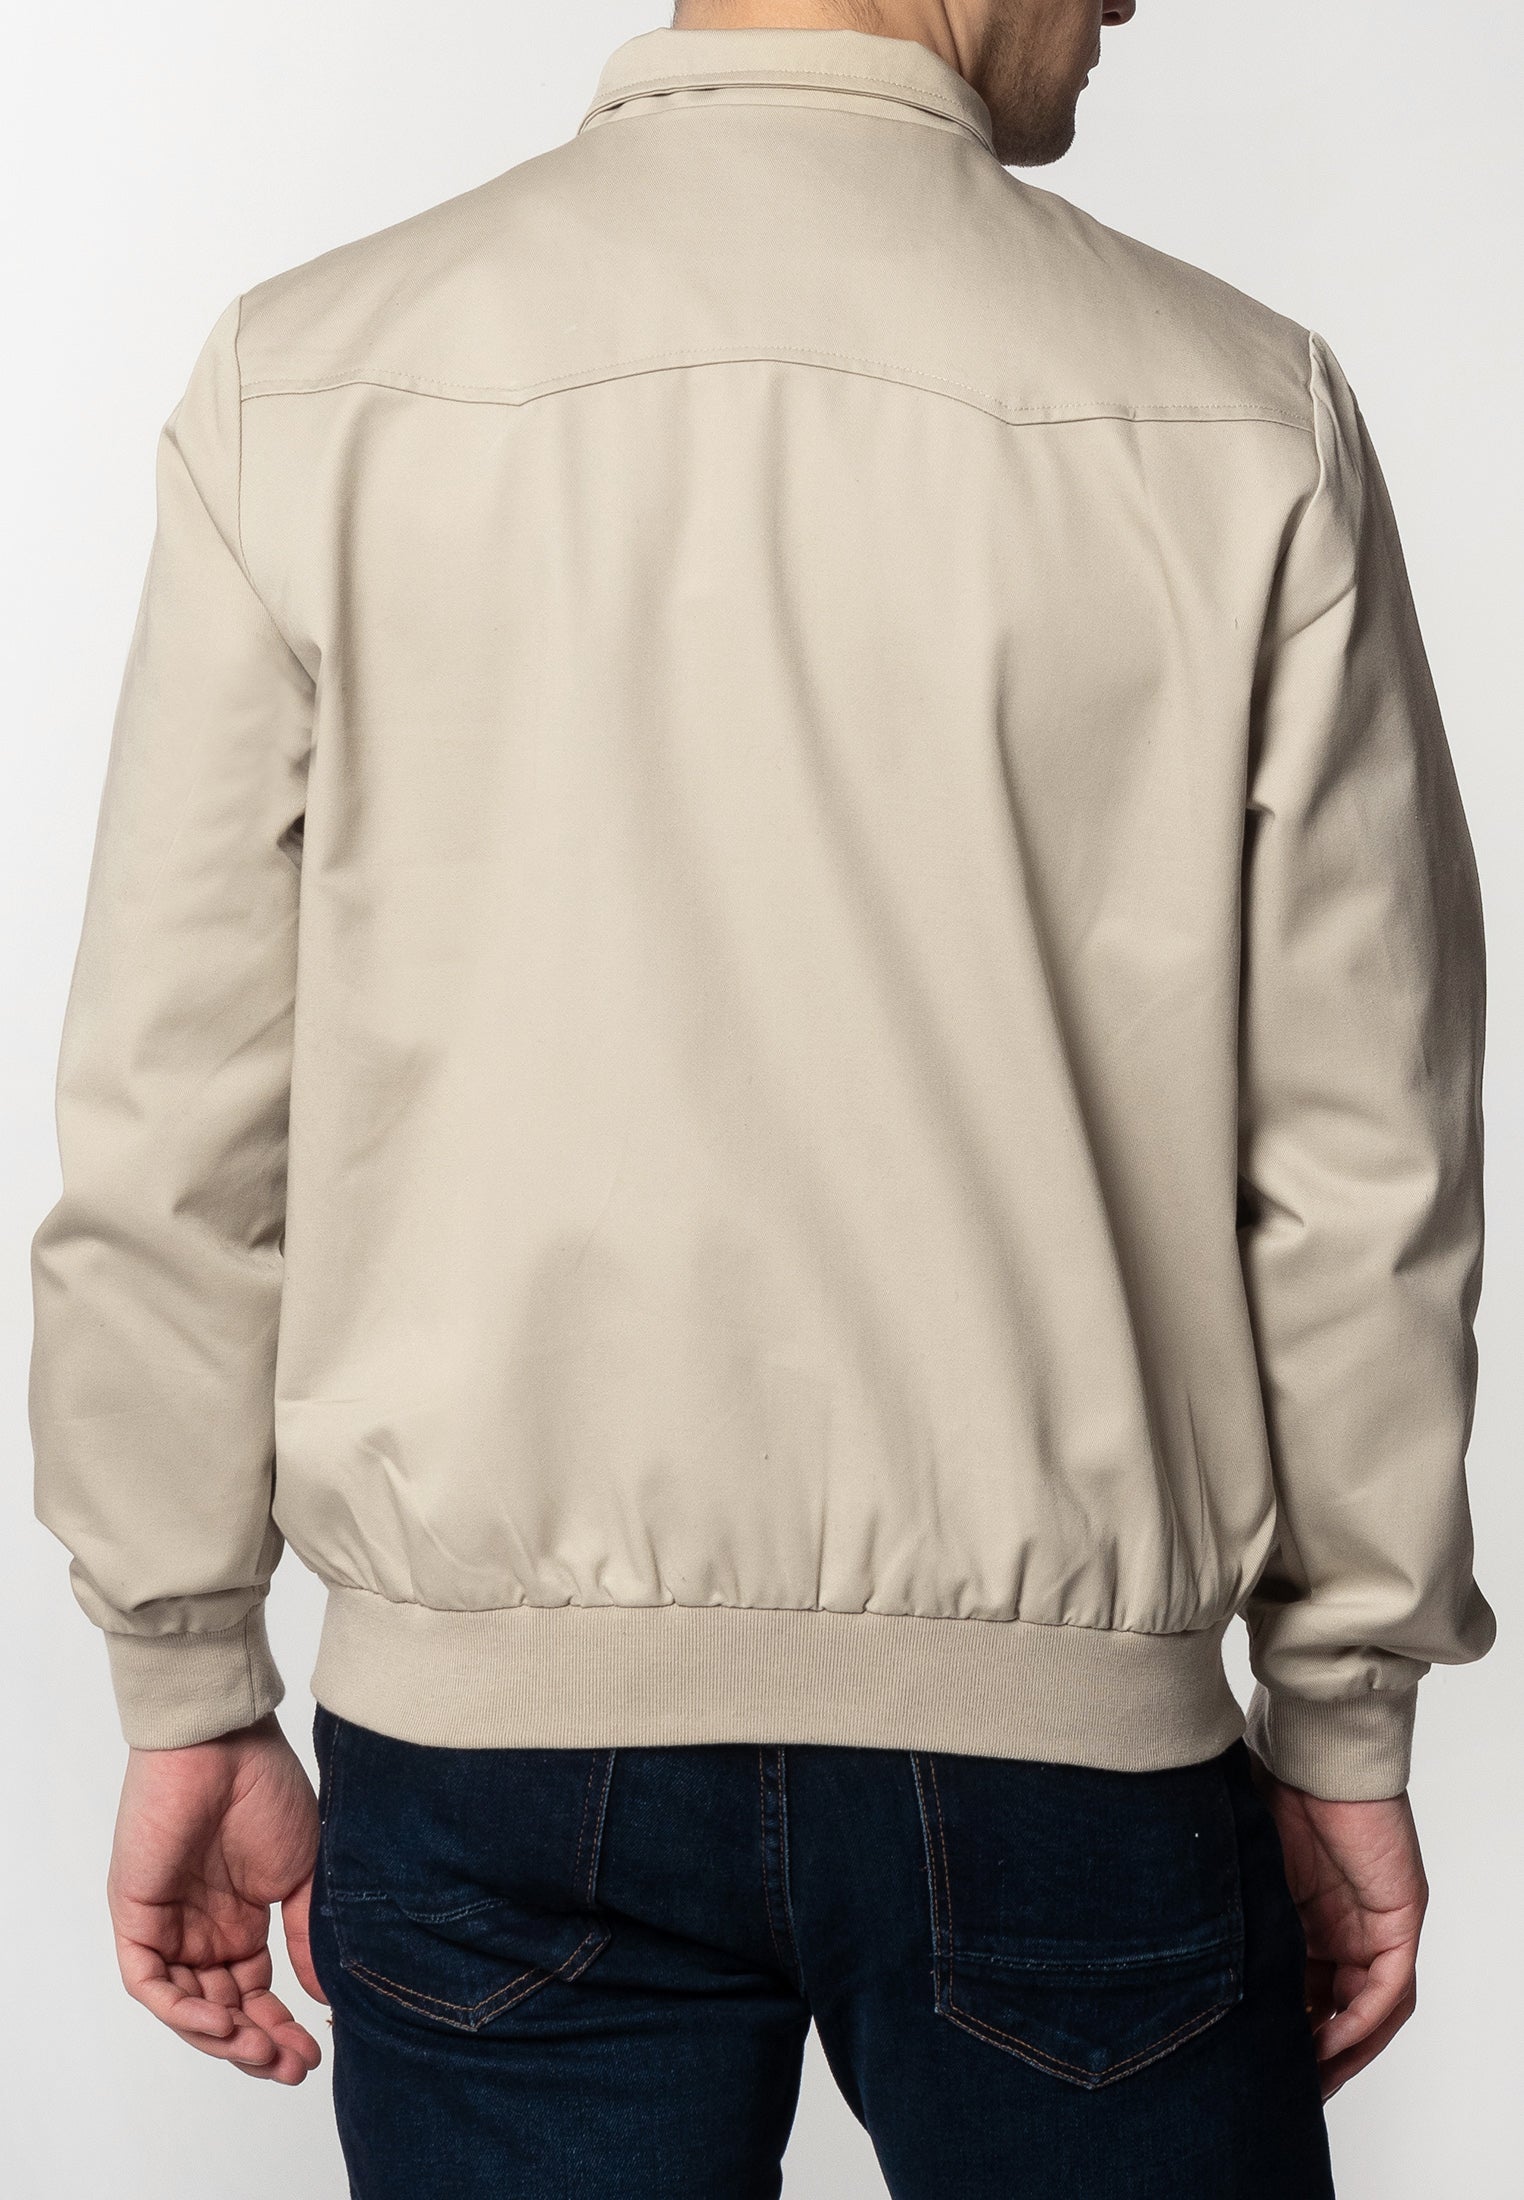 The Harrington Jacket - Mod Jackets - Mod Clothing – Merc